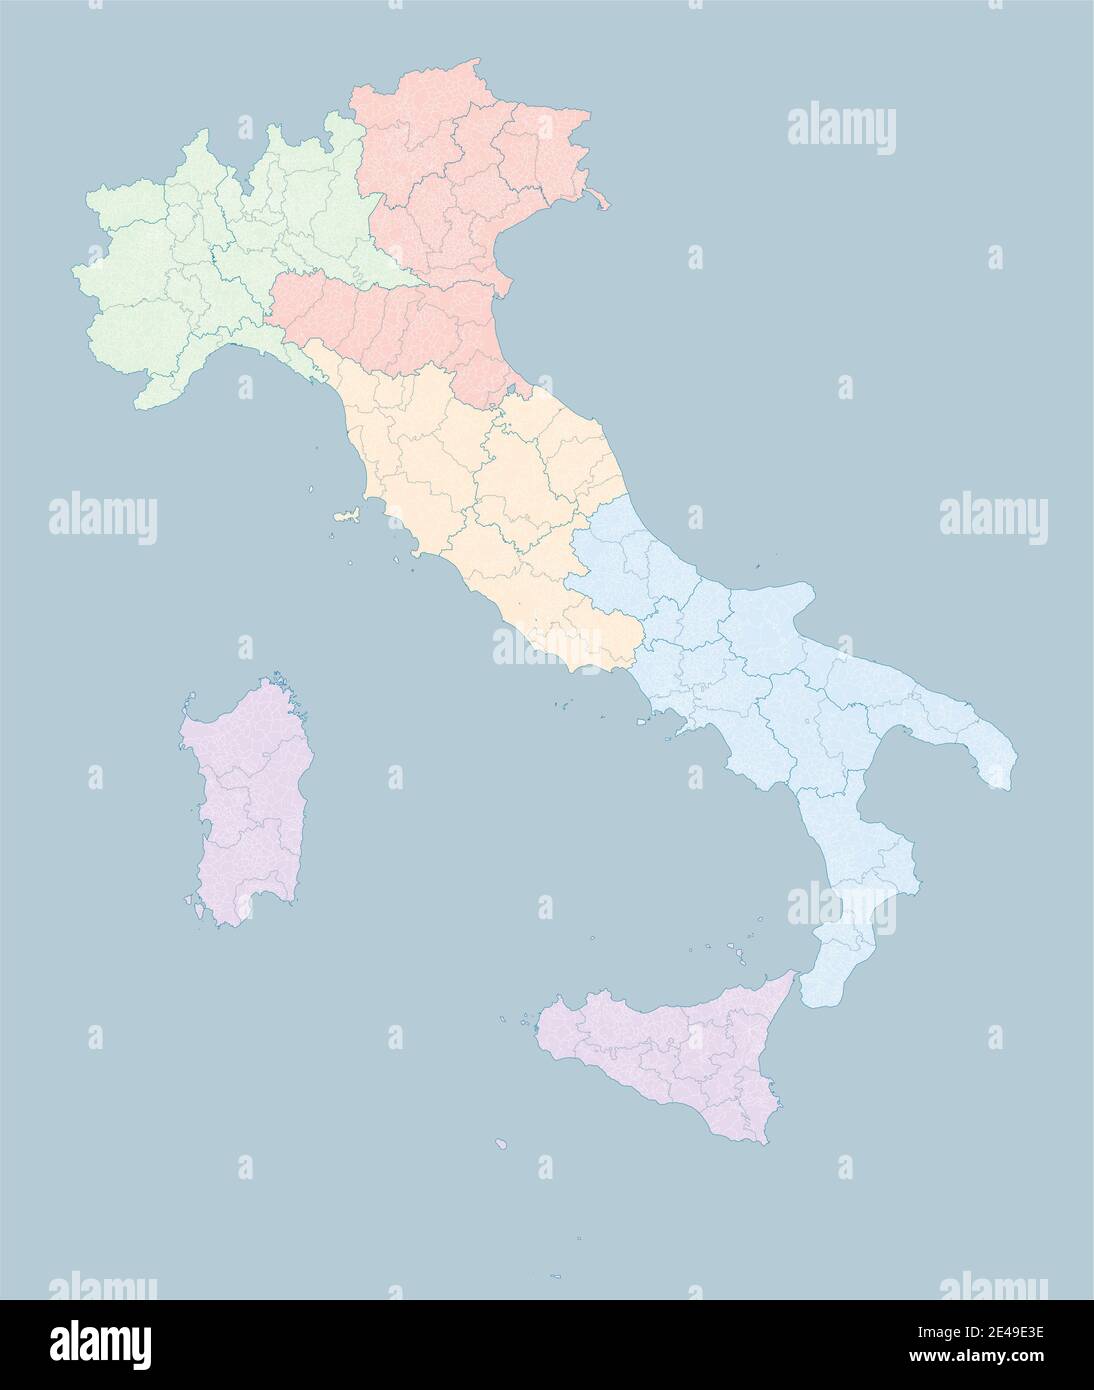 Mappa dell'Italia, divisione per zone, regioni, province e comuni. Poligoni chiusi e perfettamente modificabili, riempimento poligono e tracciati di colore modificabili Illustrazione Vettoriale